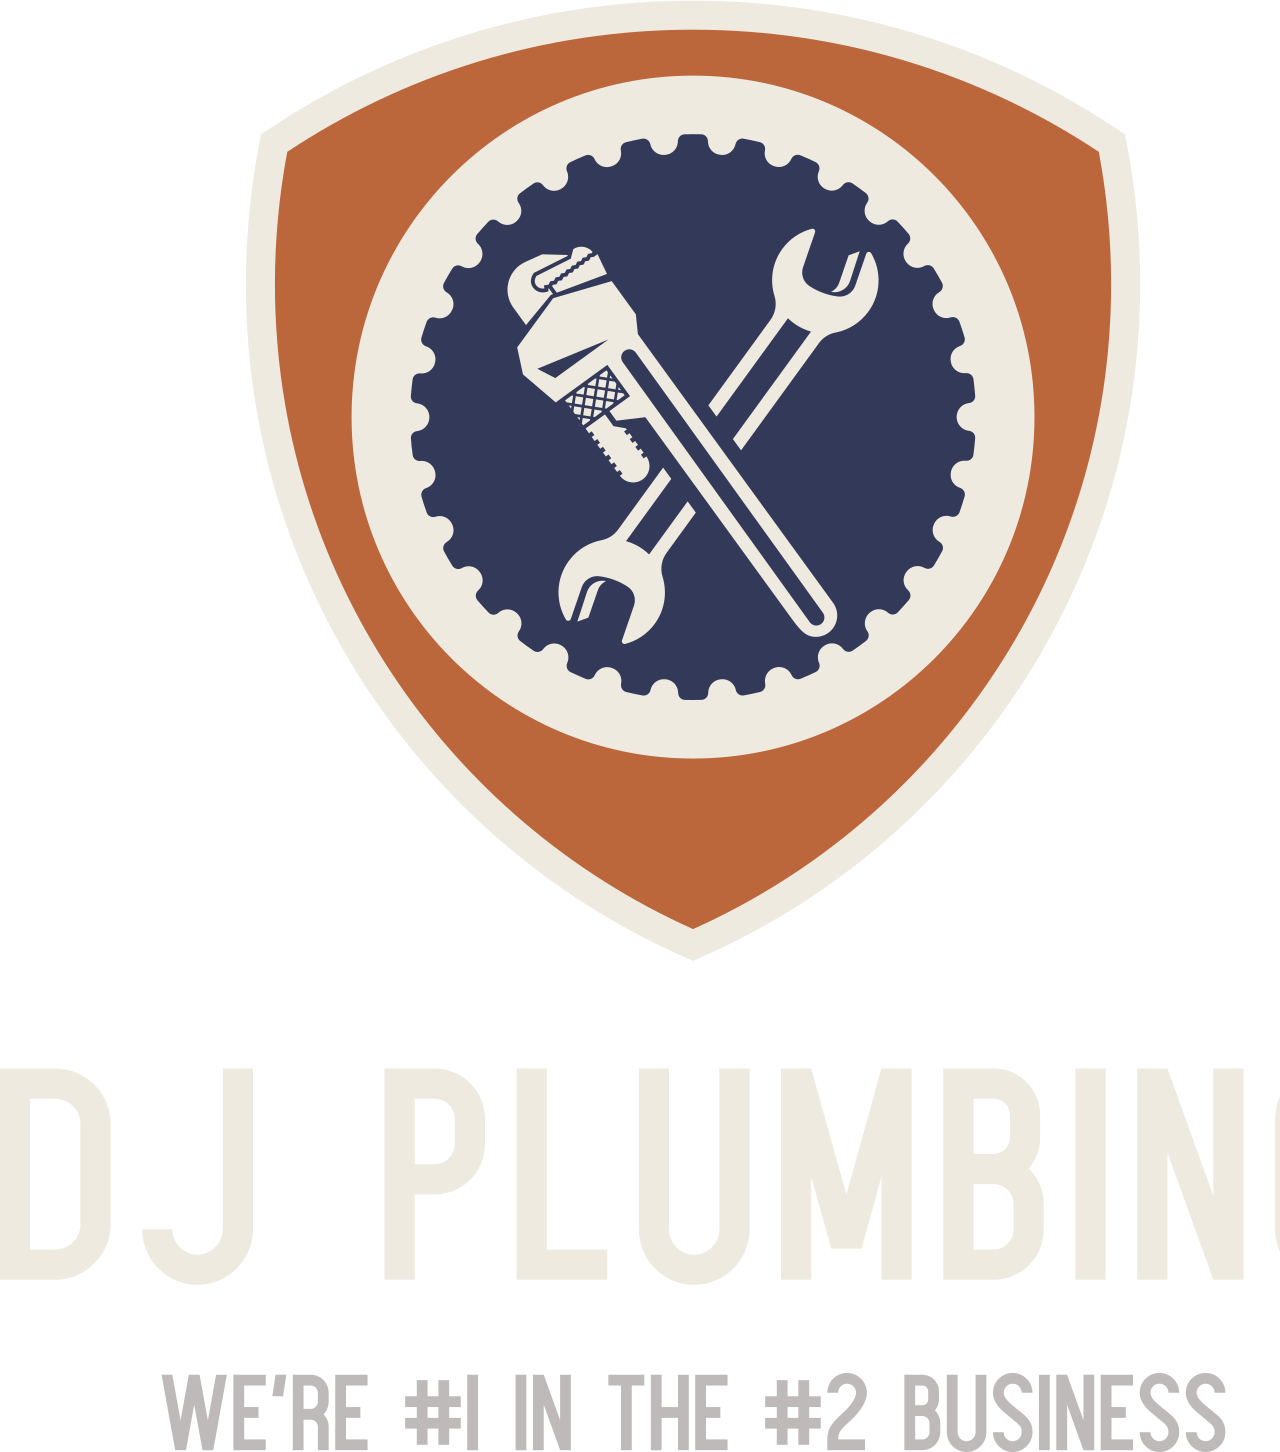 DJ Plumbing's logo